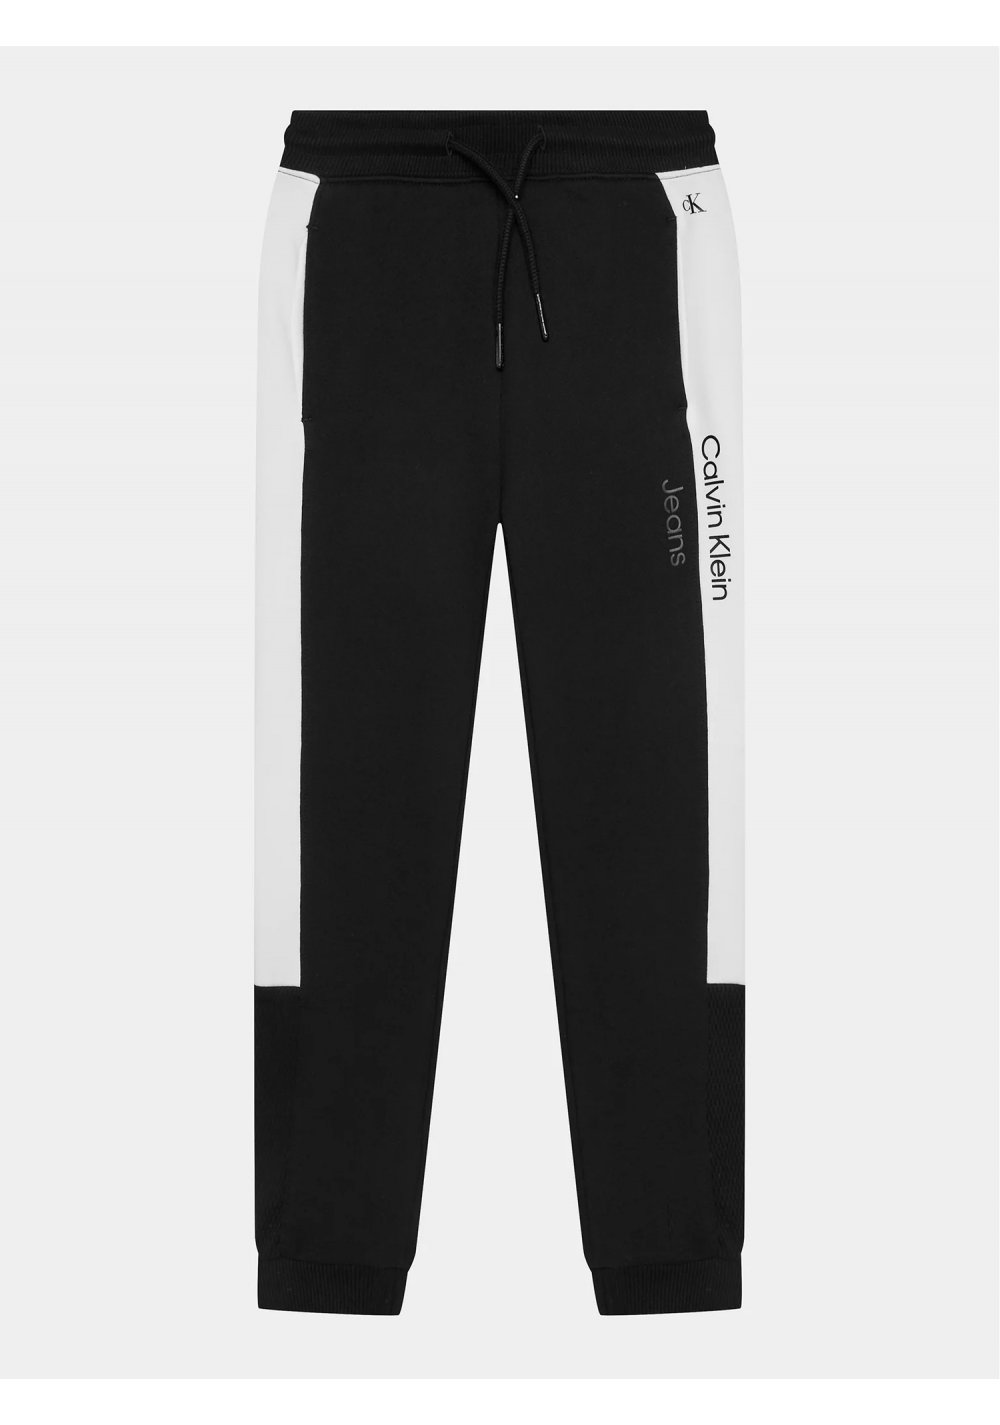 Calvin Klein bambino TERRY COLOR - pantalone nero in felpa leggera